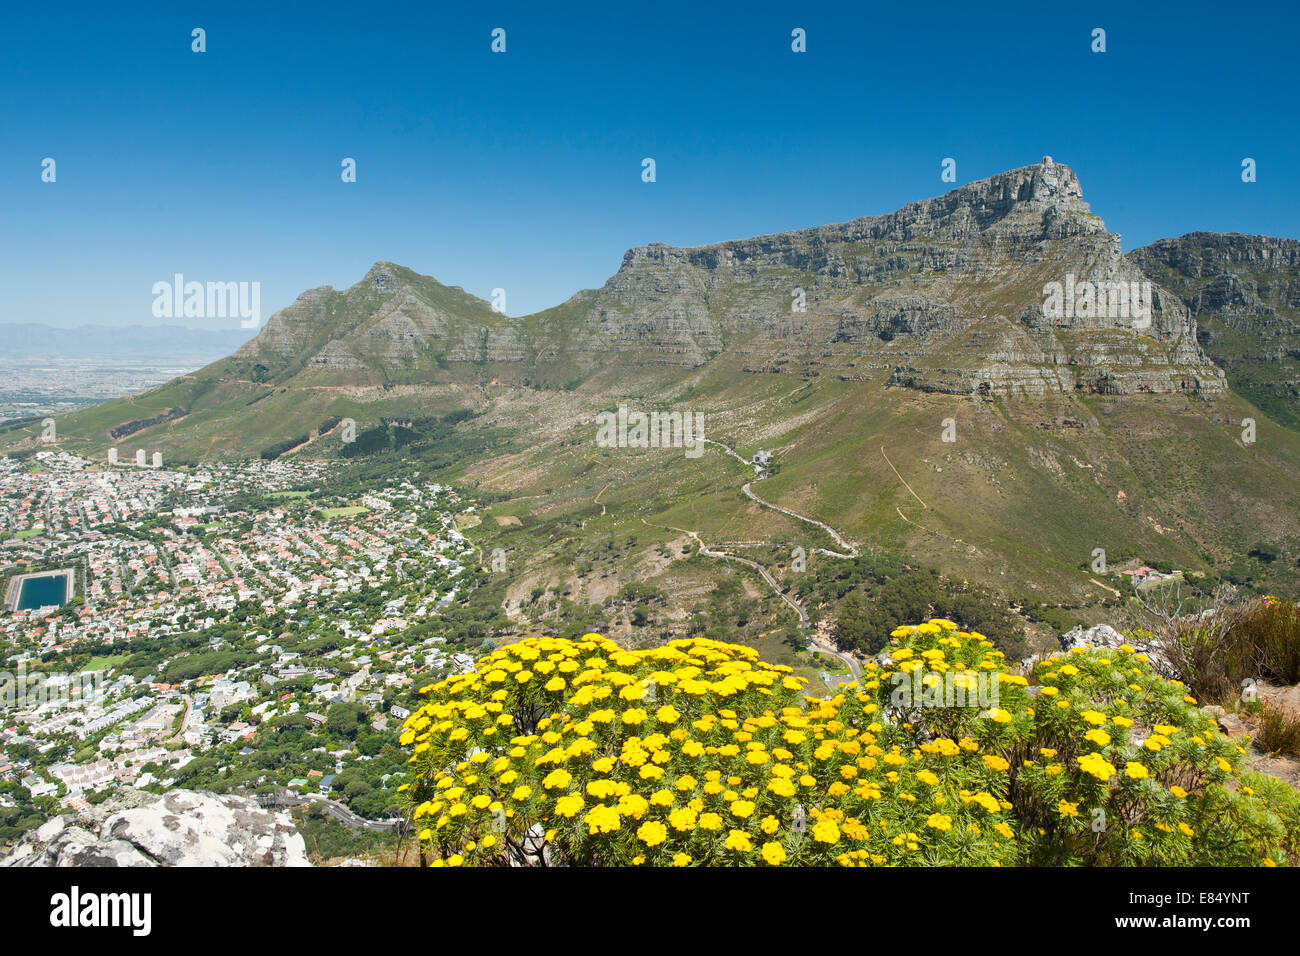 La montagne de la table au Cap, Afrique du Sud avec un Golden Coulter (bush Hymenolepis parviflora) au premier plan. Banque D'Images